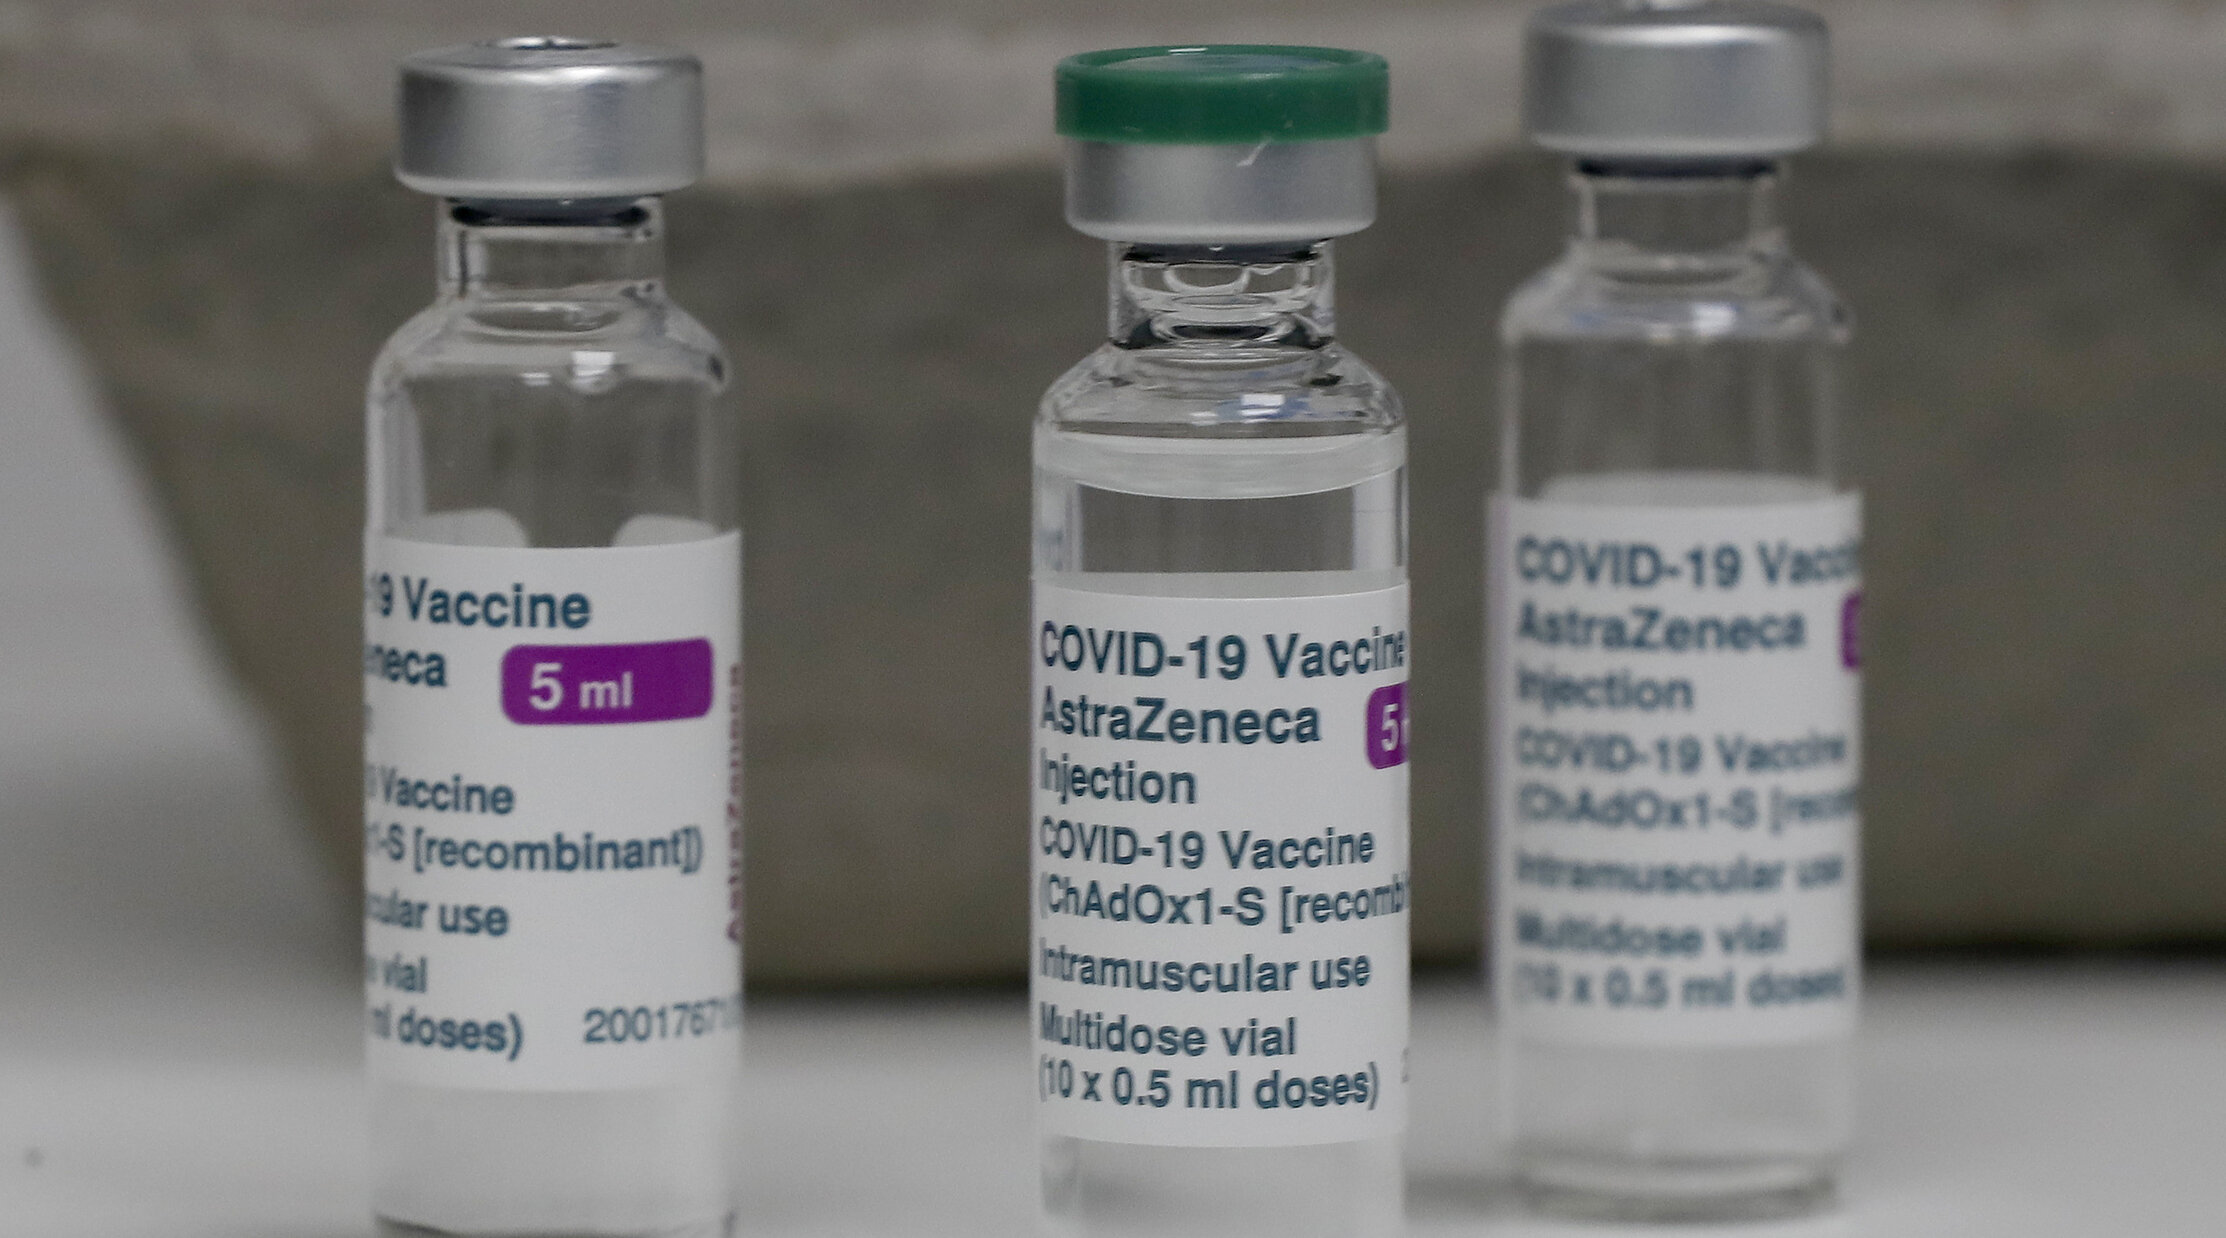 Cercetătorii norvegieni consideră că vaccinul AstraZeneca este resposabil pentru evenimentele trombotice